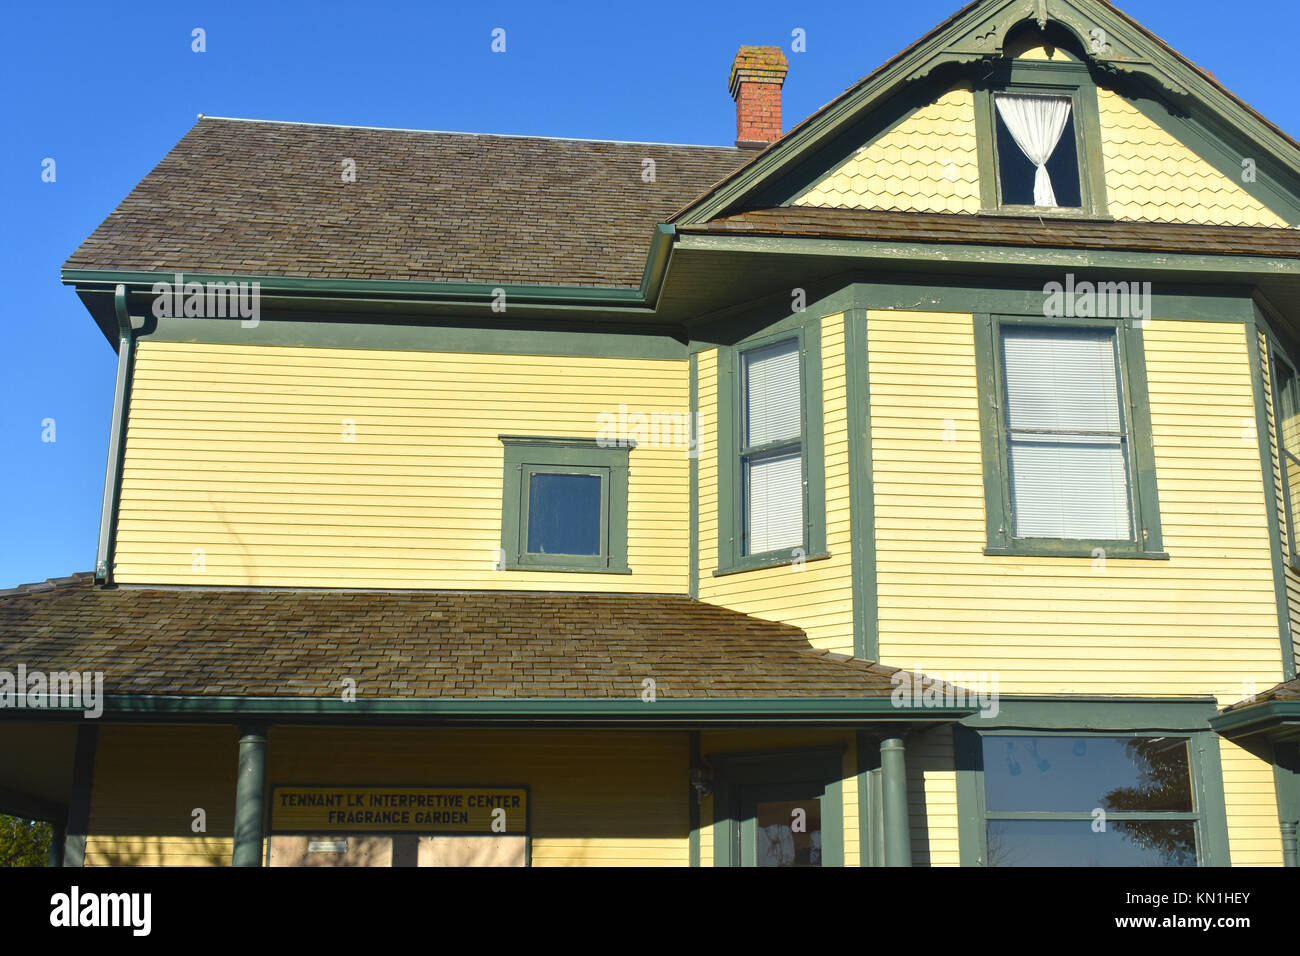 Tennant See Interpretive Centre und Duftgarten in Ferndale, Washington. Dieses alte gelbe Haus ist ein historisches Wahrzeichen. Stockfoto